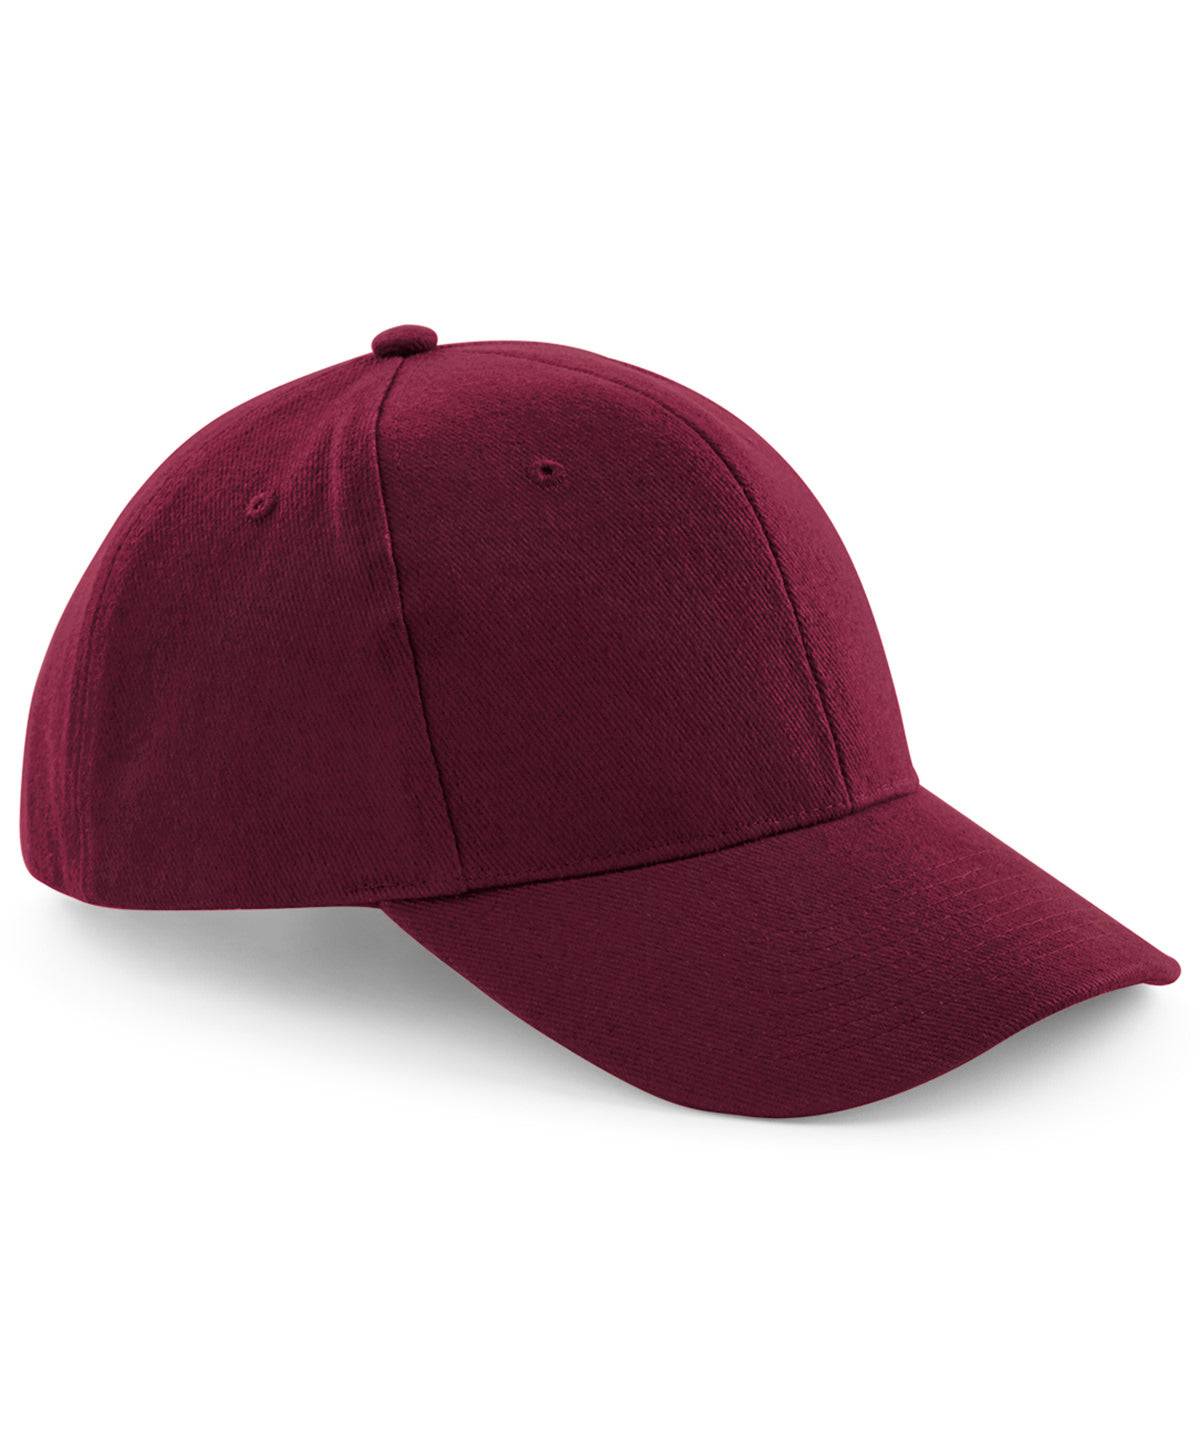 Burgundy - Pro-style heavy brushed cotton cap